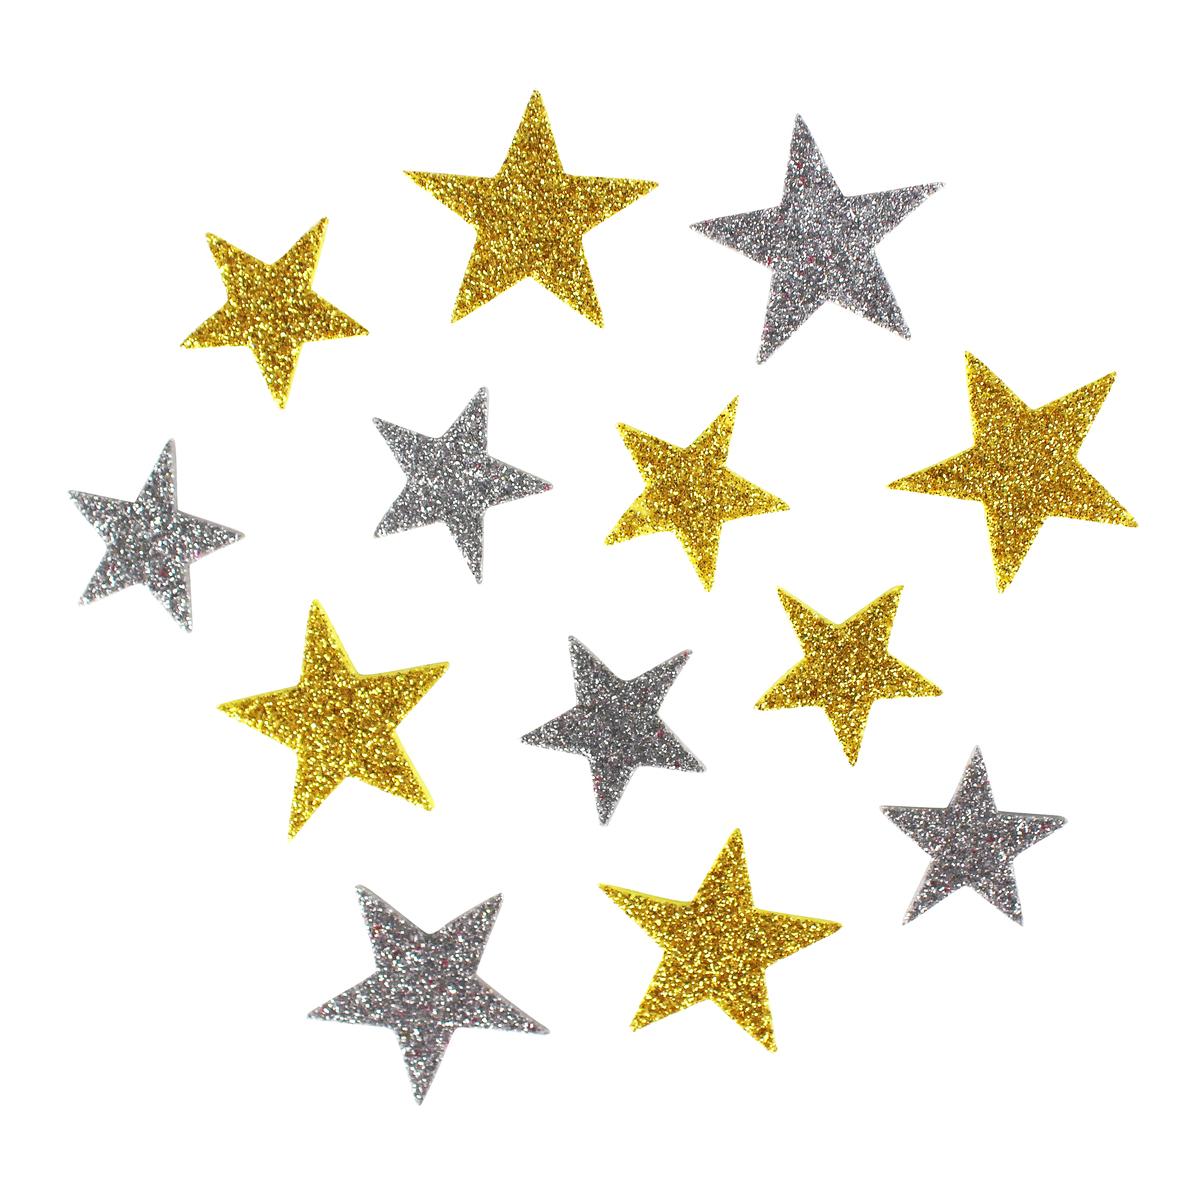 Méga pack stickers étoiles adhésives mousse pailleté 2 à 3 cm x 72pcs